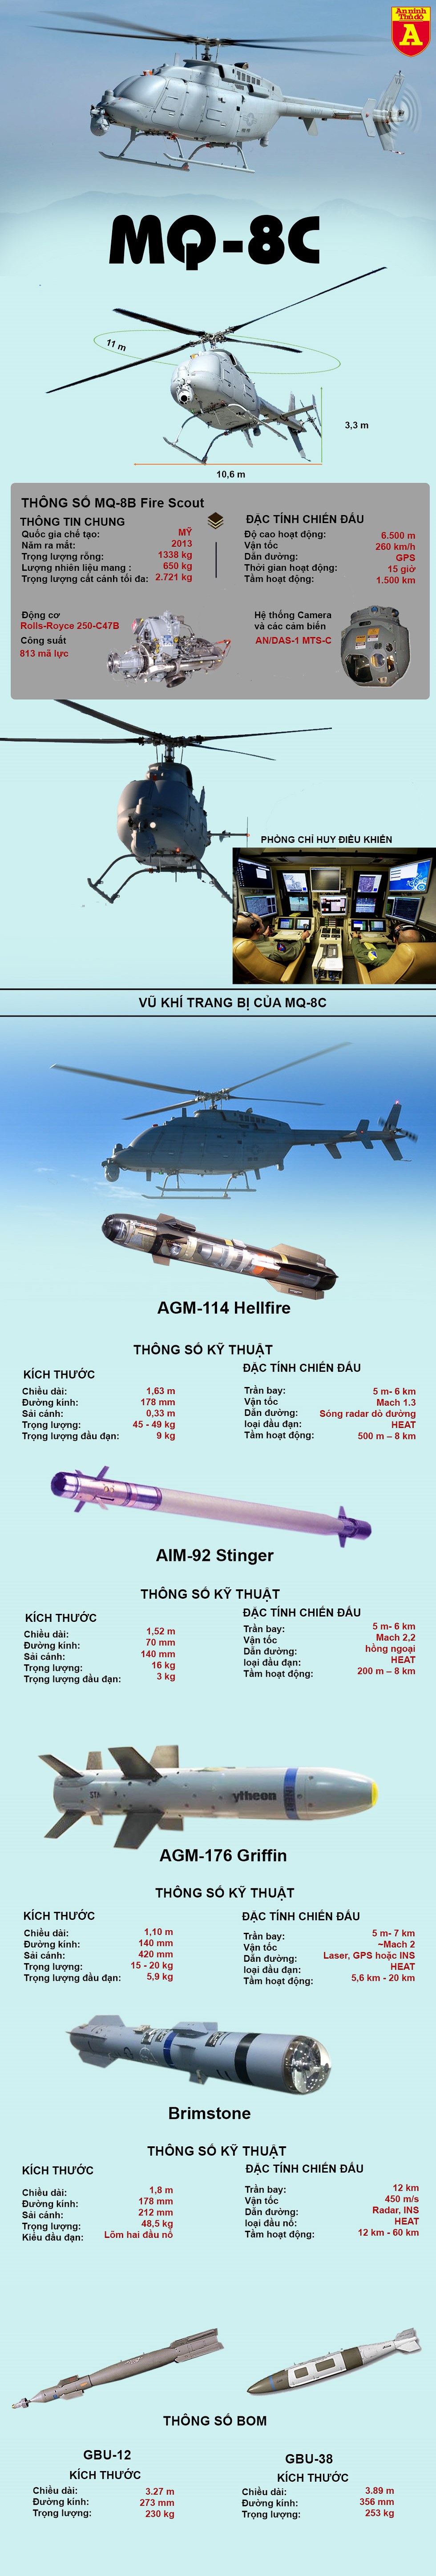 [Infographics] Trực thăng không người lái - "Chim lửa" MQ-8C đình cao của Mỹ chính thức ra mắt - Ảnh 1